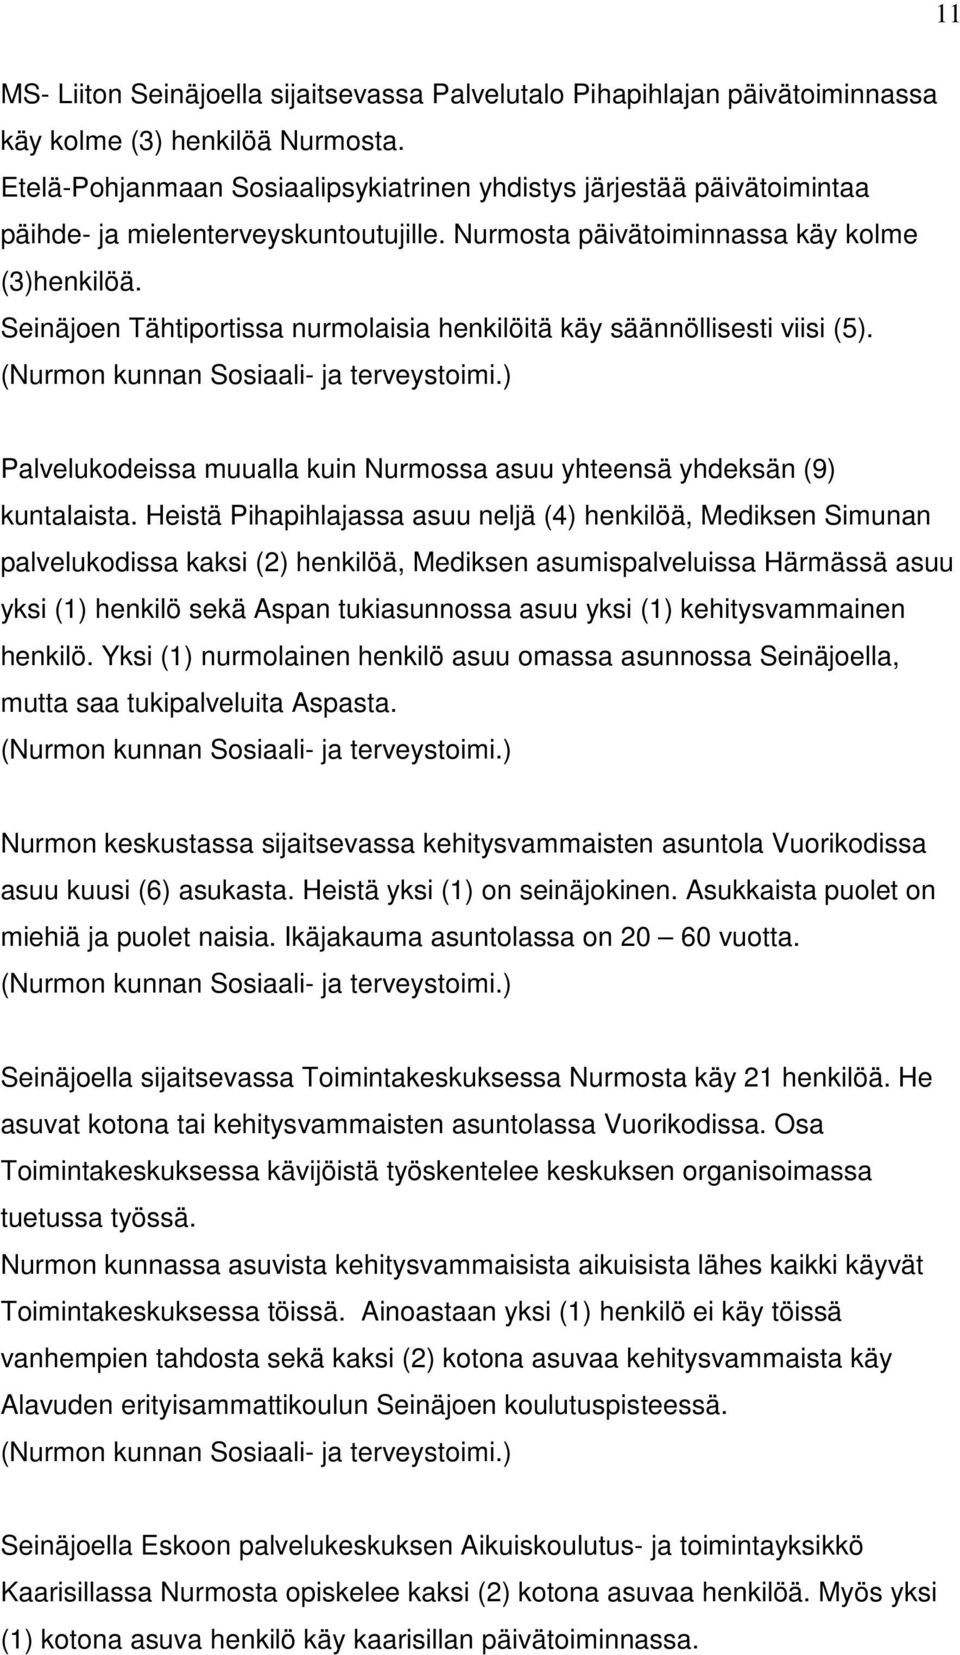 Seinäjoen Tähtiportissa nurmolaisia henkilöitä käy säännöllisesti viisi (5). (Nurmon kunnan Sosiaali- ja terveystoimi.) Palvelukodeissa muualla kuin Nurmossa asuu yhteensä yhdeksän (9) kuntalaista.